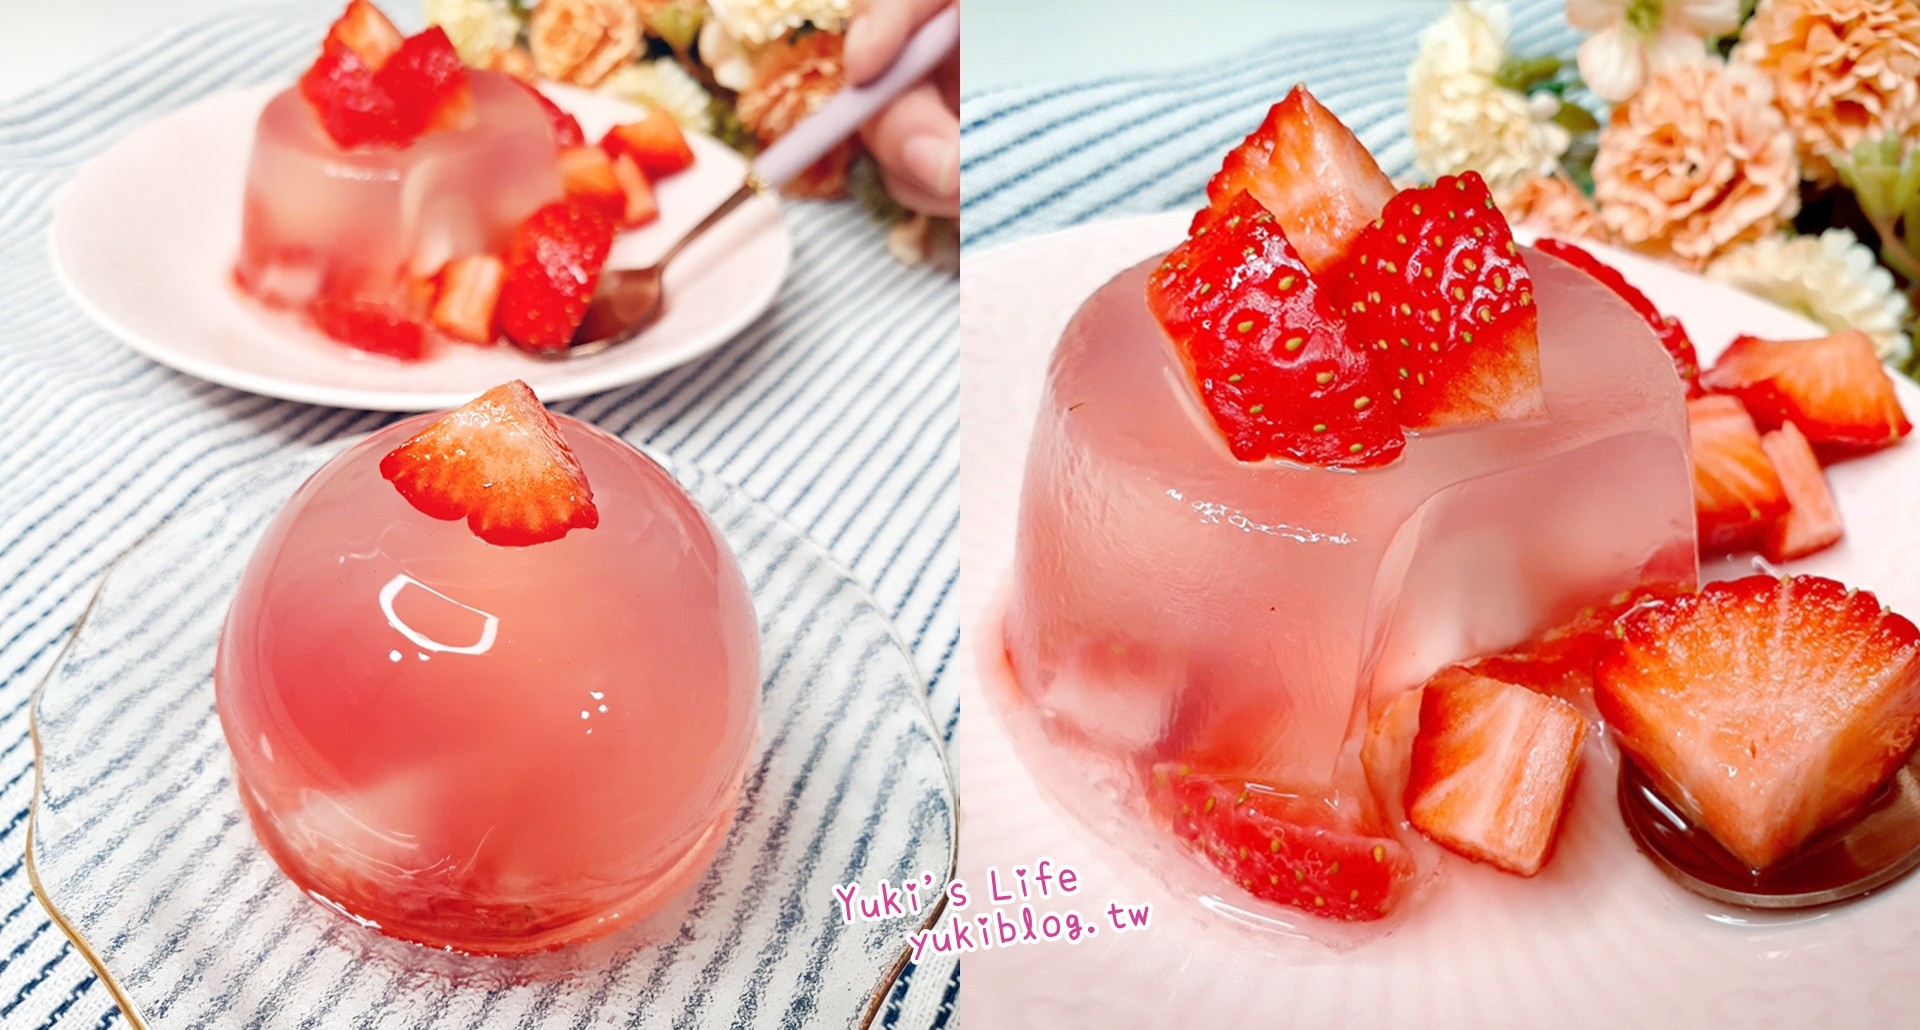 简单食谱》水果果冻做法～亲子DIY材料和步骤，圆球状草莓果冻超可爱的啦～ - yukiblog.tw